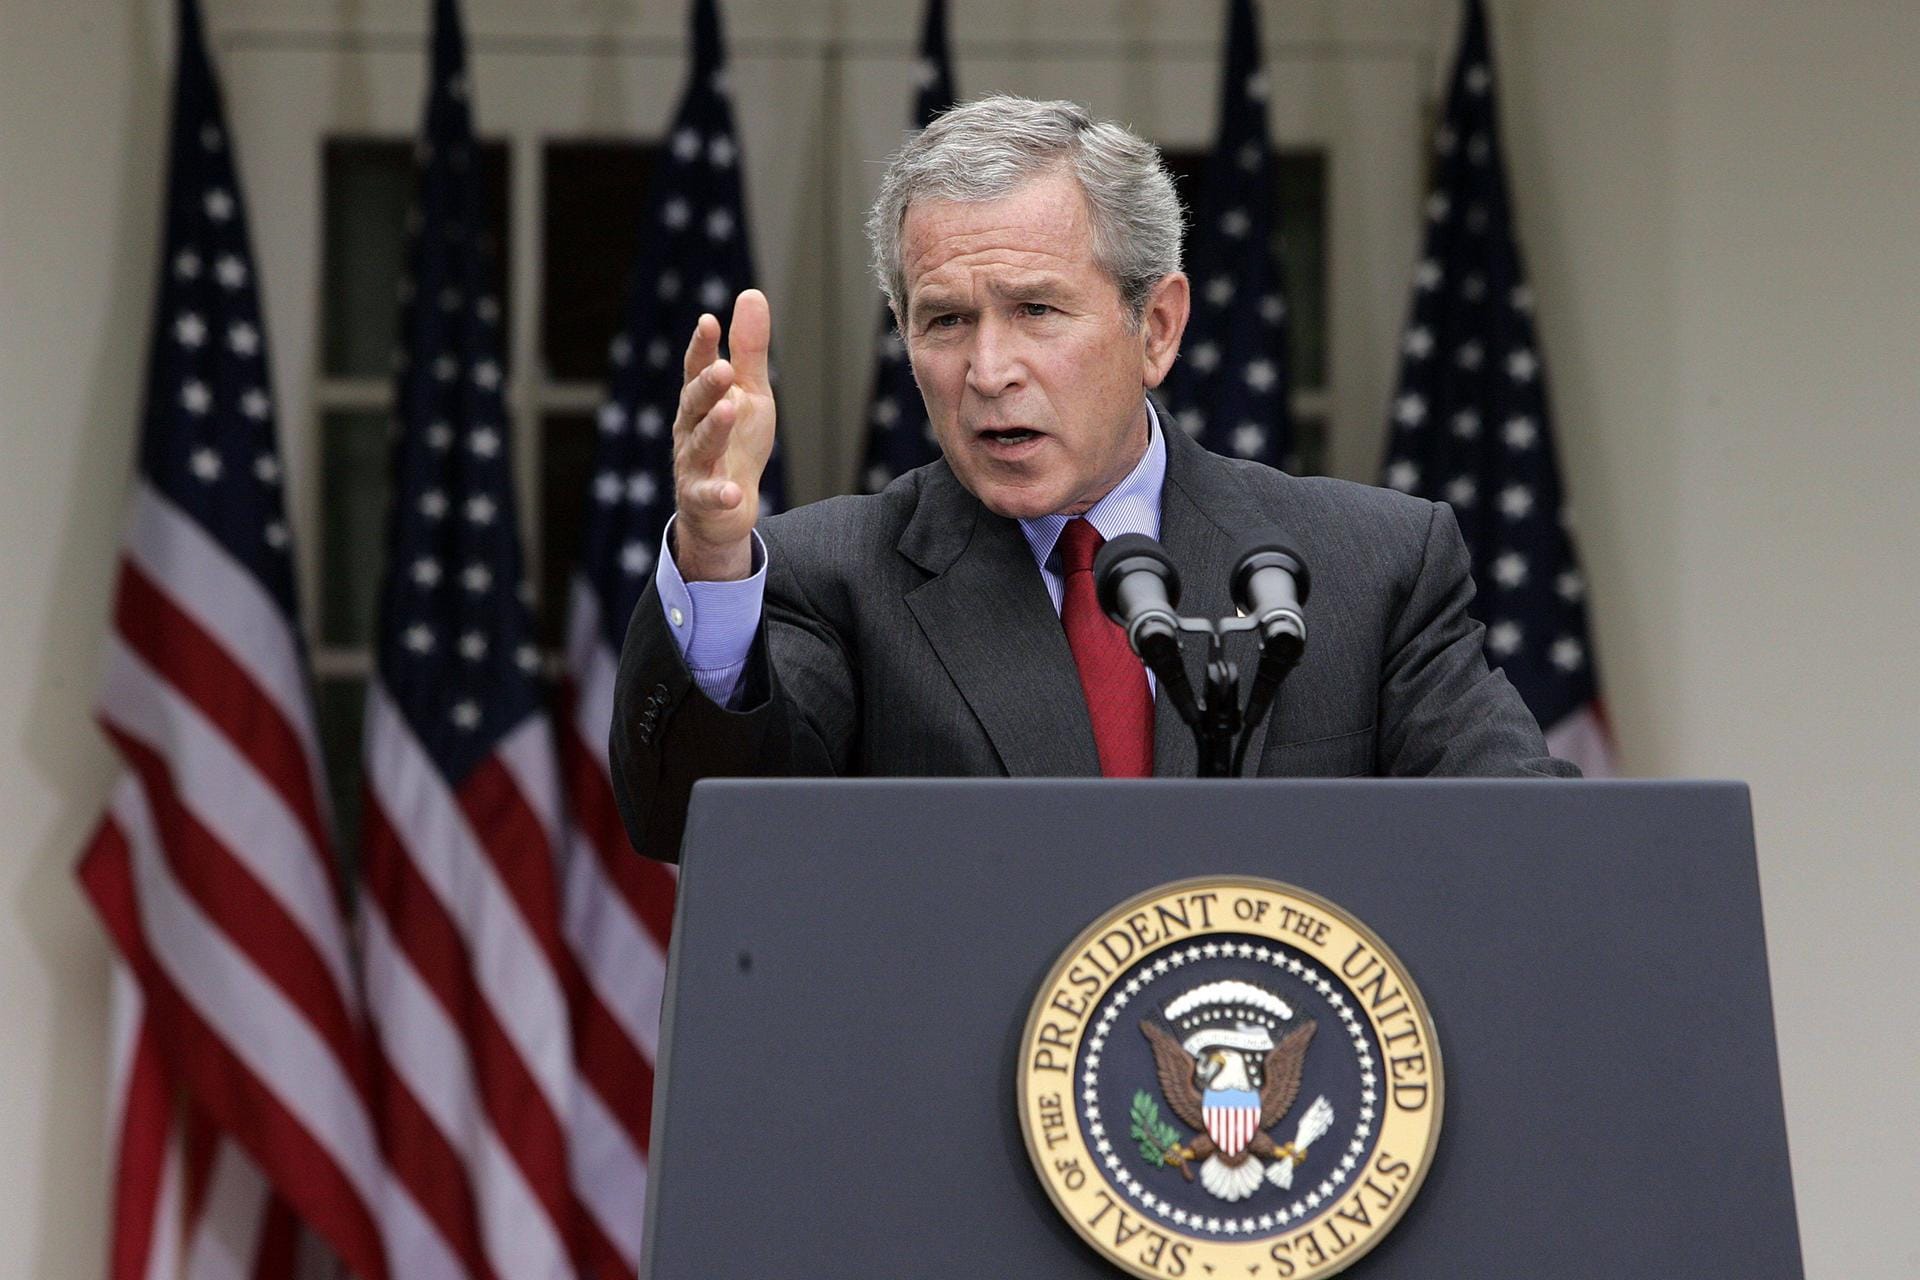 2002: Bush erklärt Iran zum Teil der "Achse des Bösen"